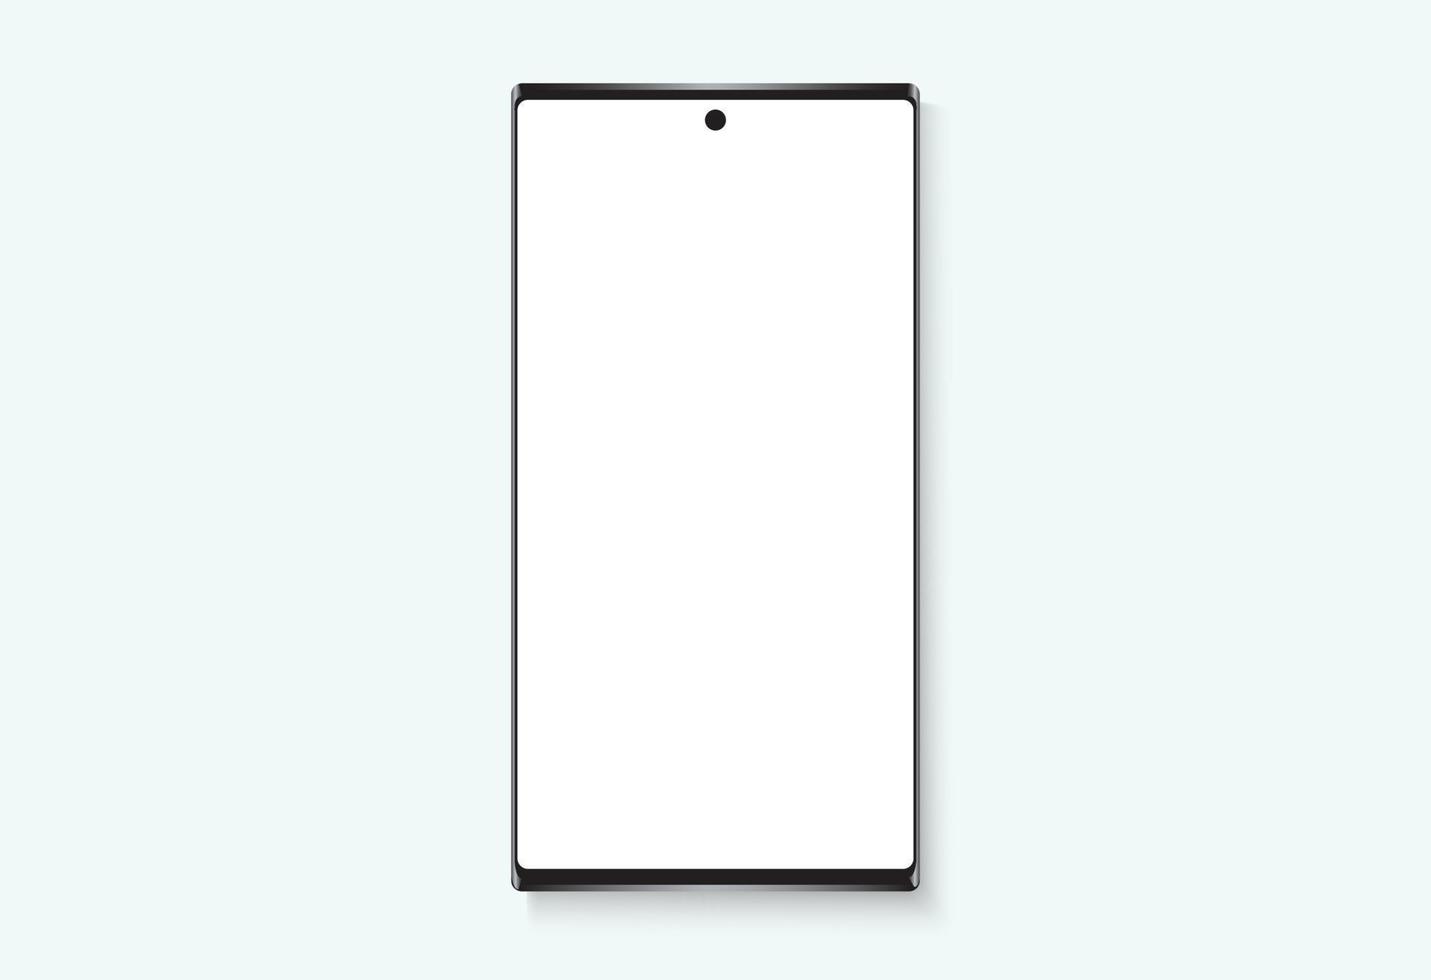 dispositivo de smartphone moderno moldura fina branco display em branco maquete ilustração ícone de tecnologia vetor